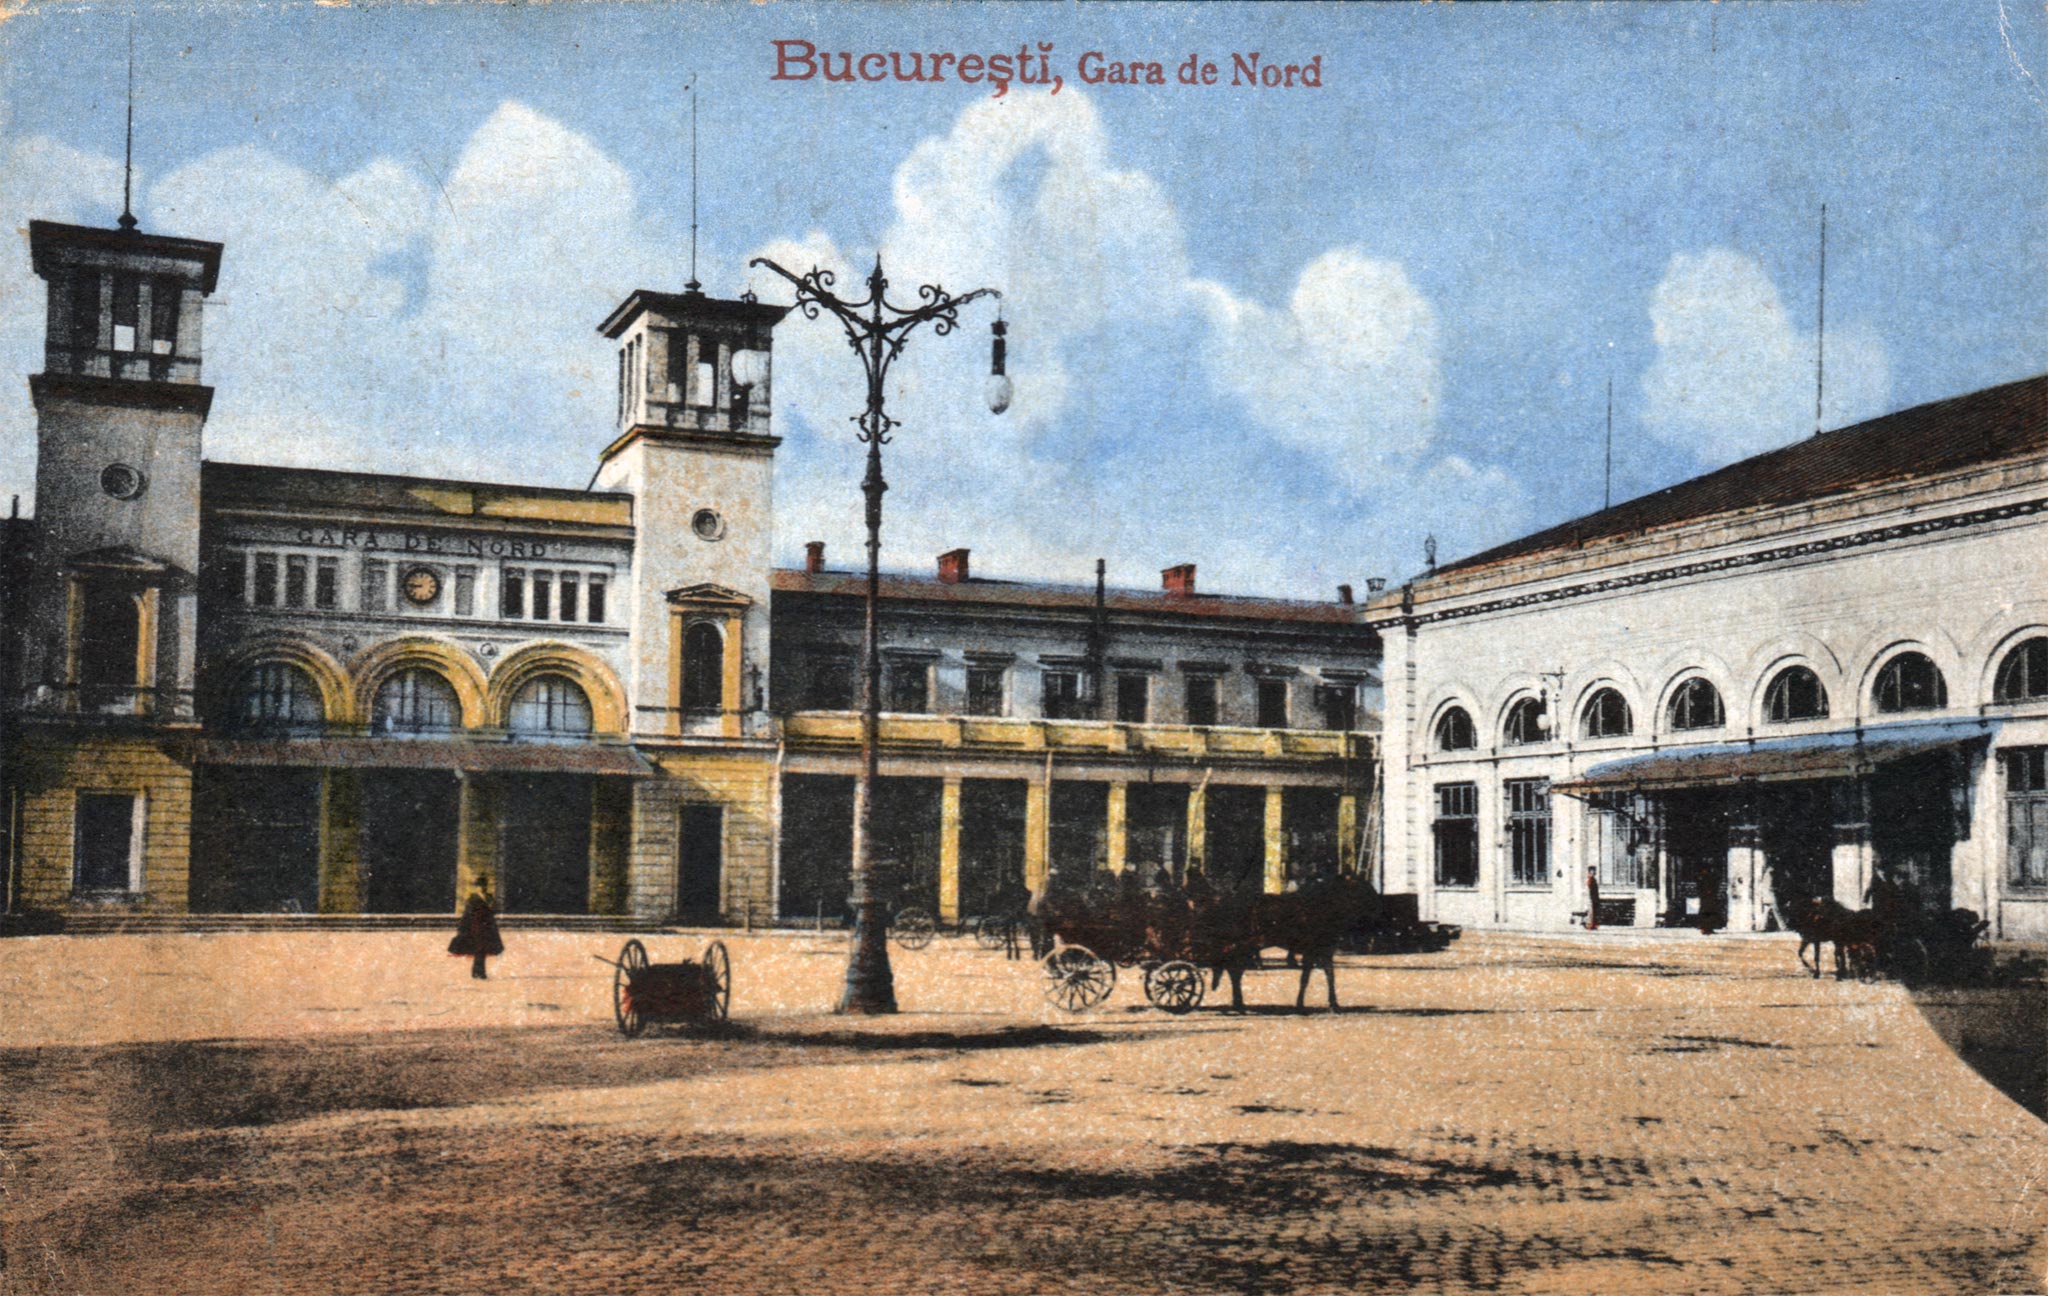 Imagini pentru București Gara de nord 1930